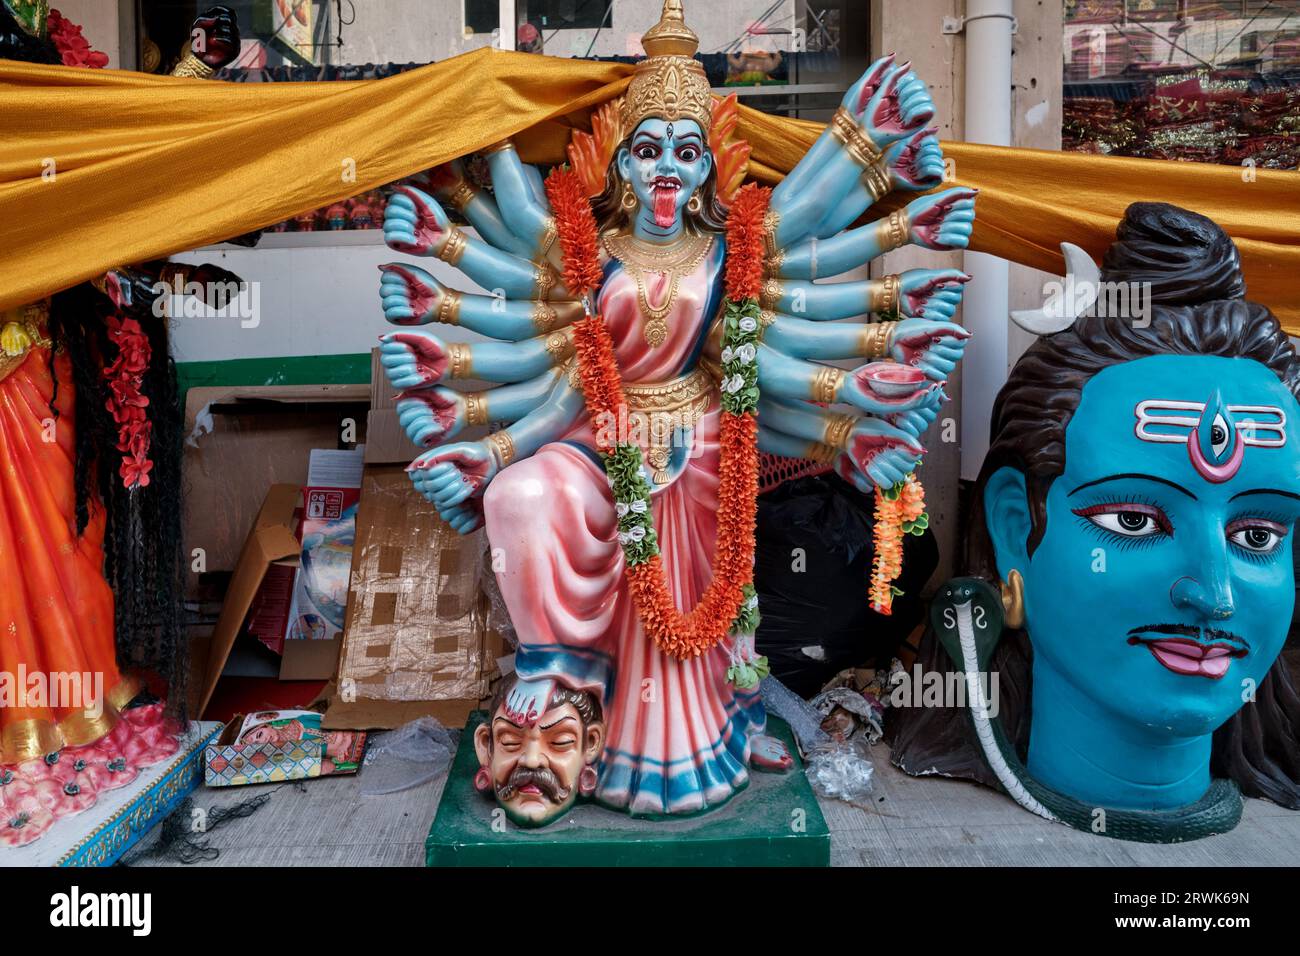 Bunte Plastik-Statuen von hinduistischen Gottheiten, die vor einem Hindugeschäft in Pahurat (Phahurat), einem kleinen indischen Viertel in Bangkok, Thailand, platziert sind Stockfoto